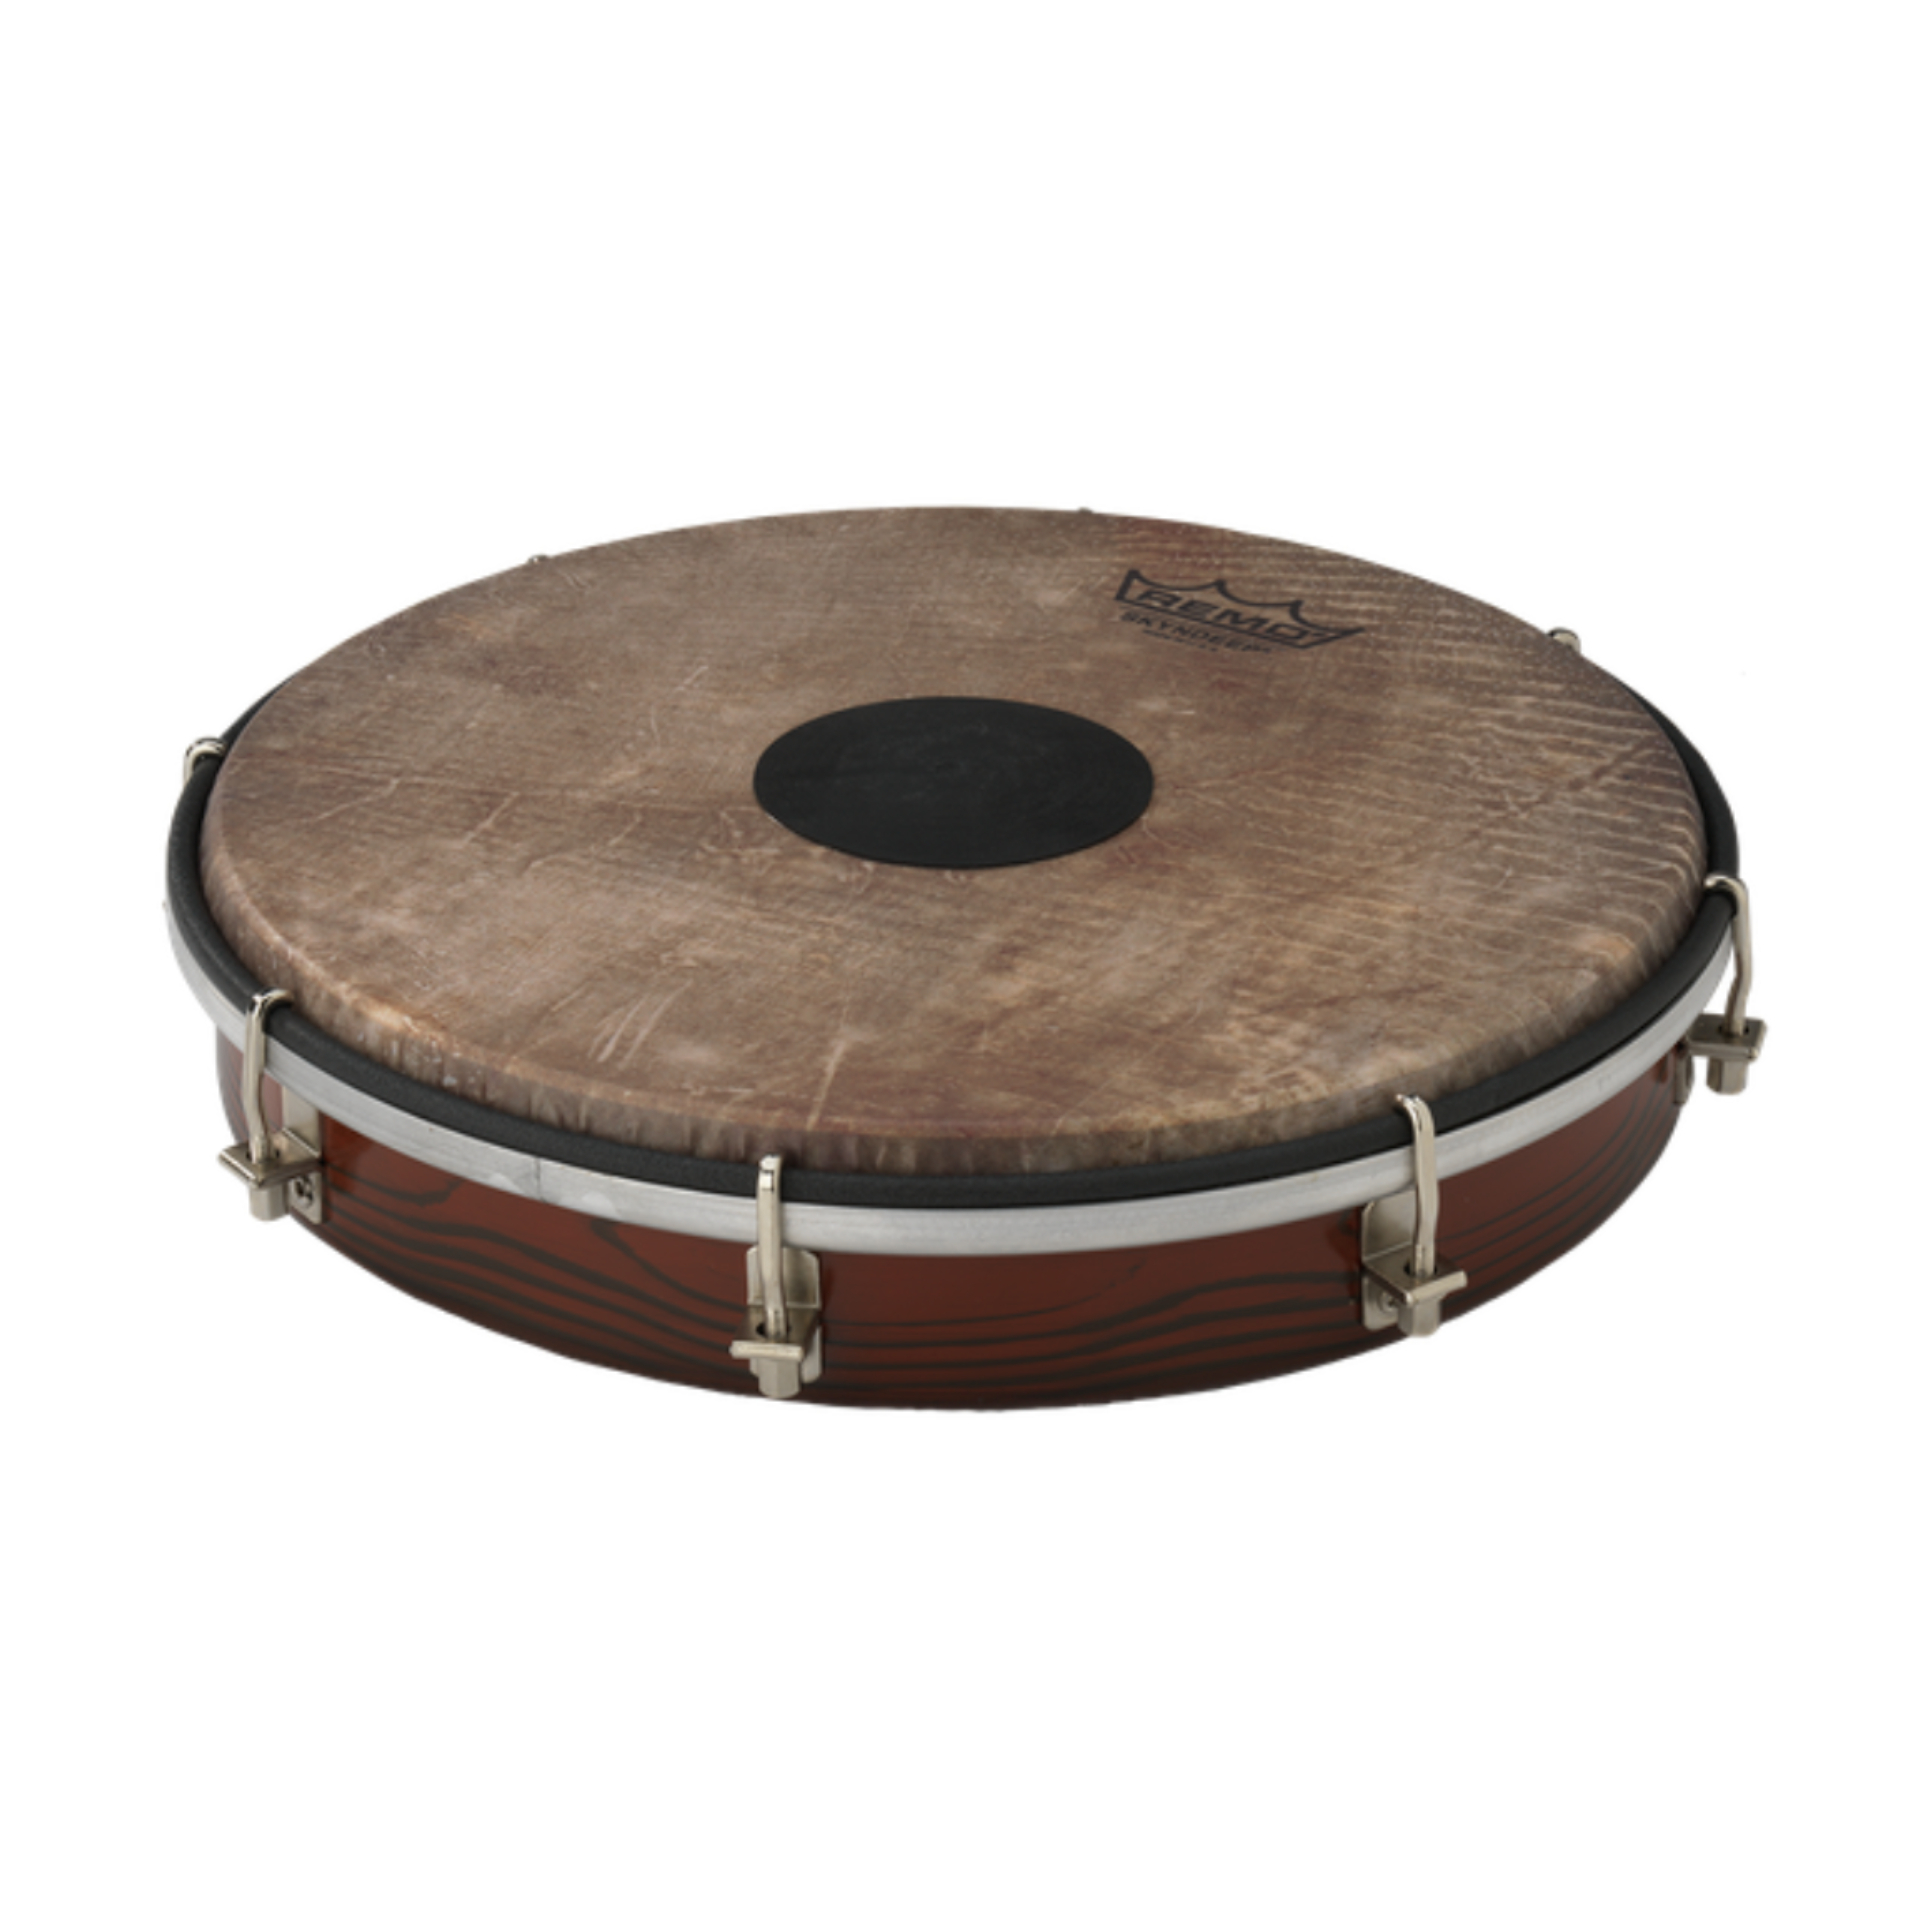 remo塔布拉框鼓可调音坦布拉框鼓手鼓1012寸印度专业打击乐器8